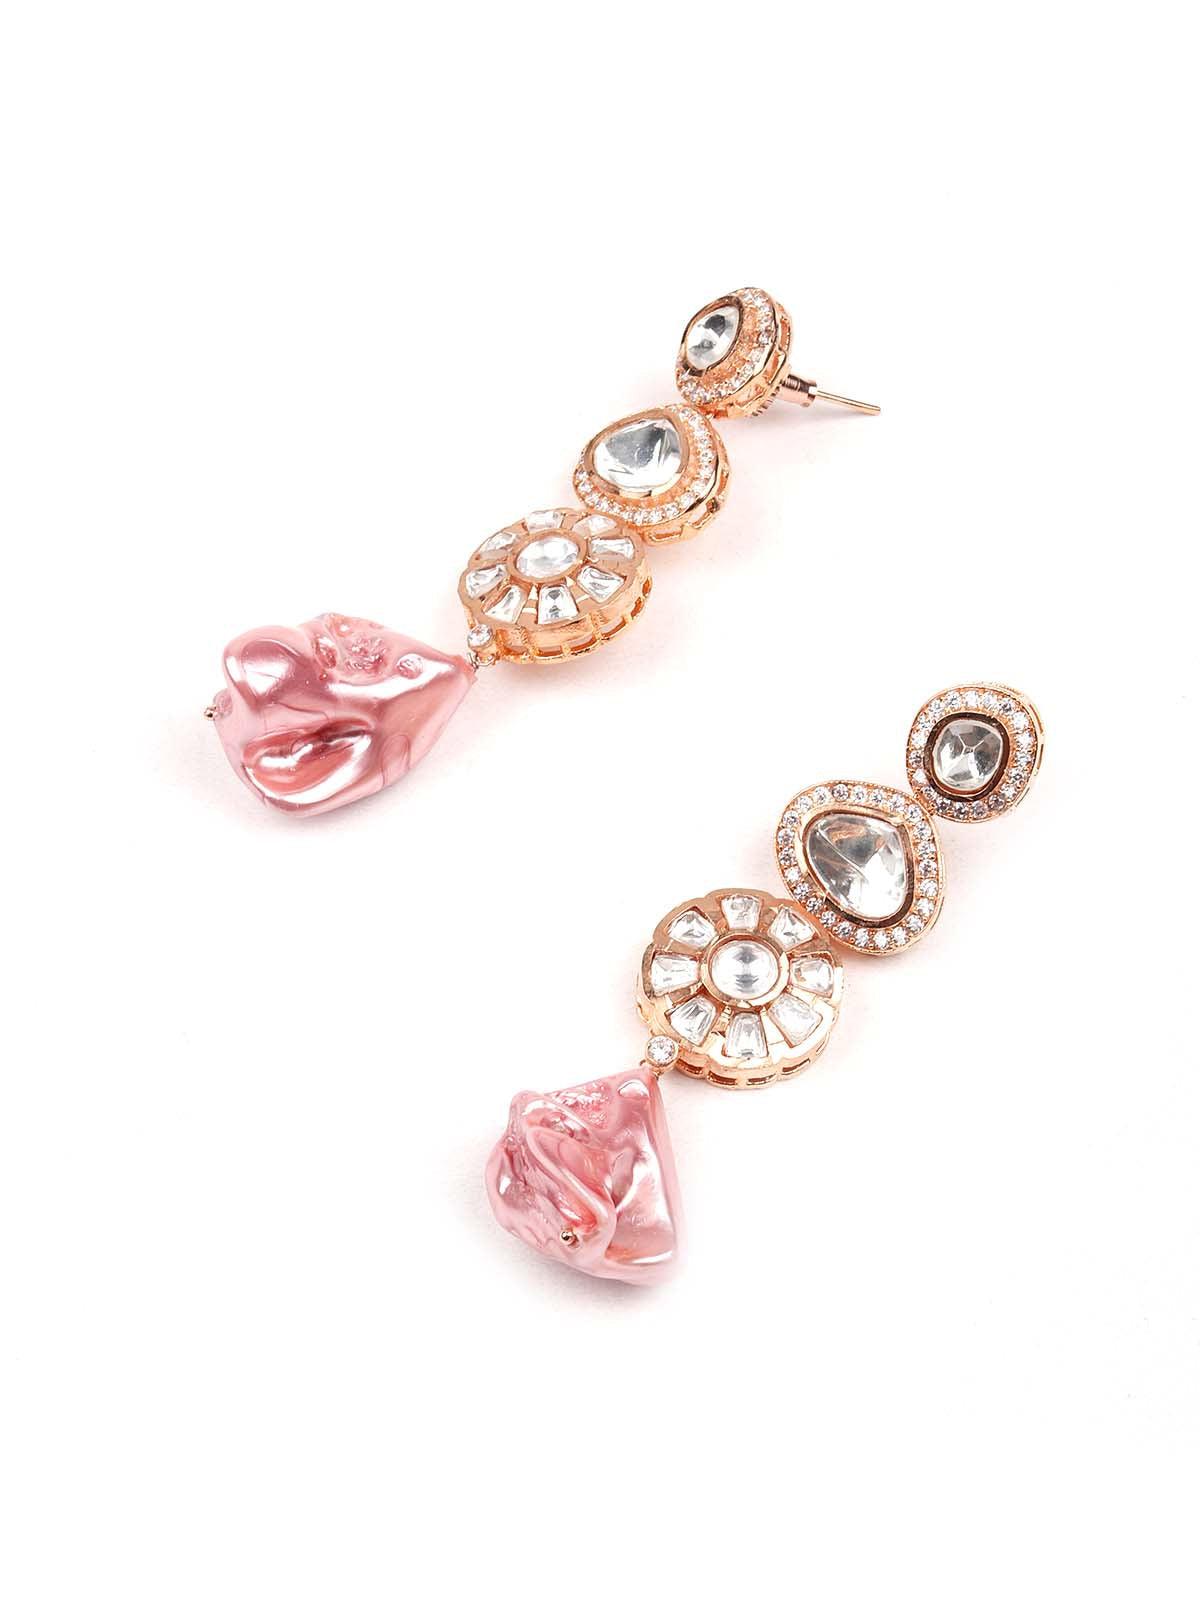 Pink studded stunning statement necklace set - Odette